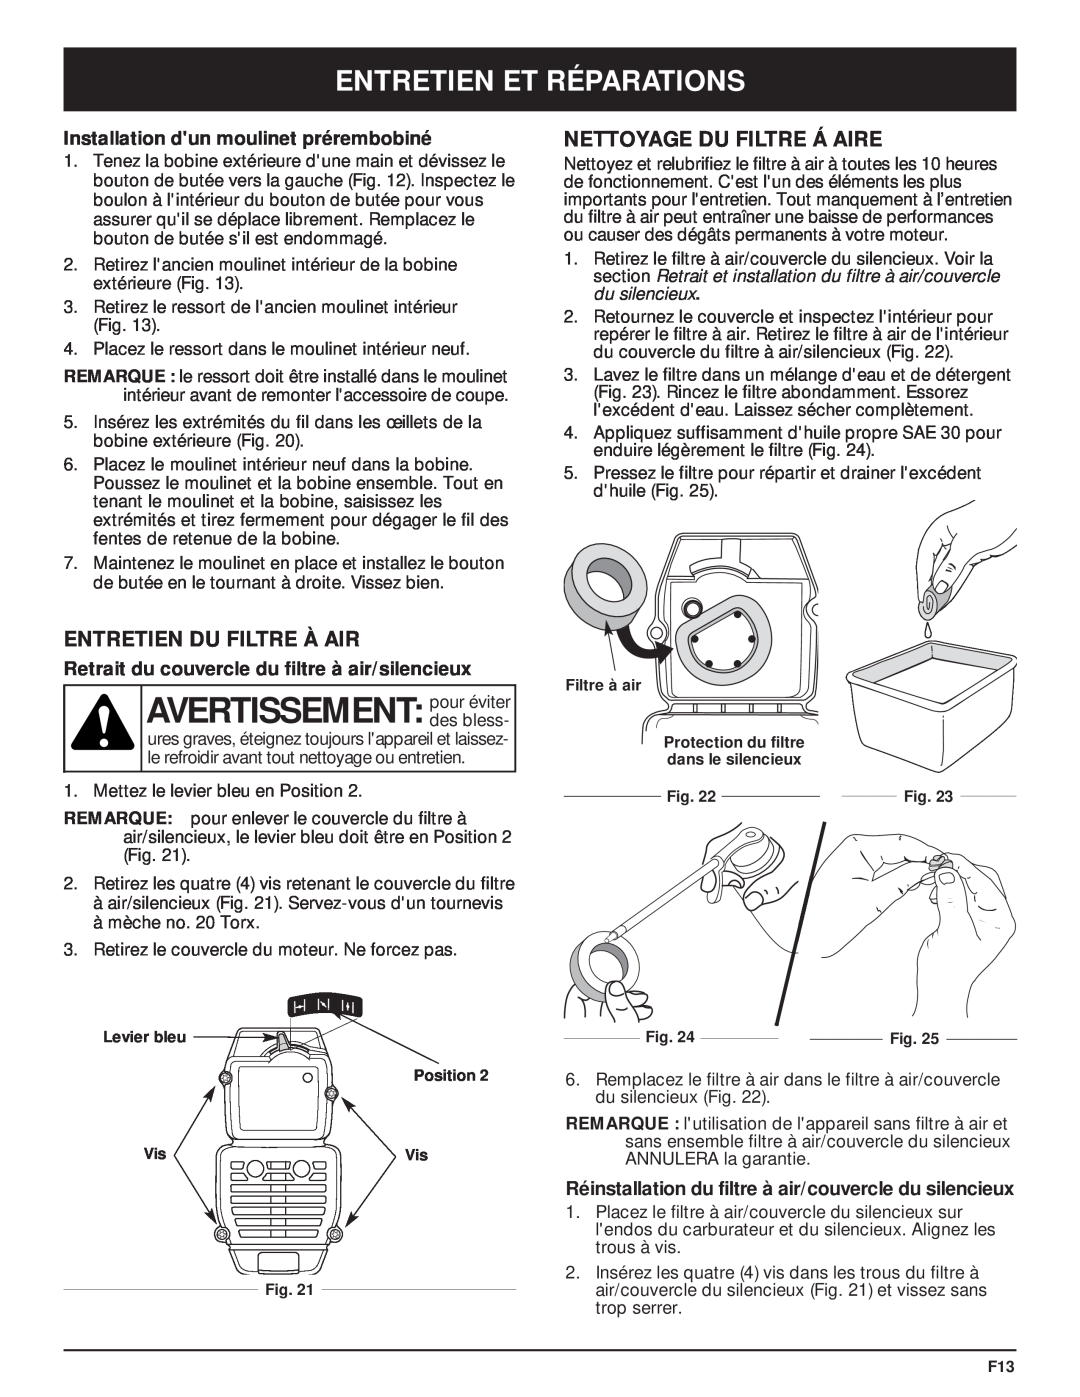 MTD MT700 manual AVERTISSEMENT pour éviter, Entretien Du Filtre À Air, Nettoyage Du Filtre Á Aire, Entretien Et Réparations 